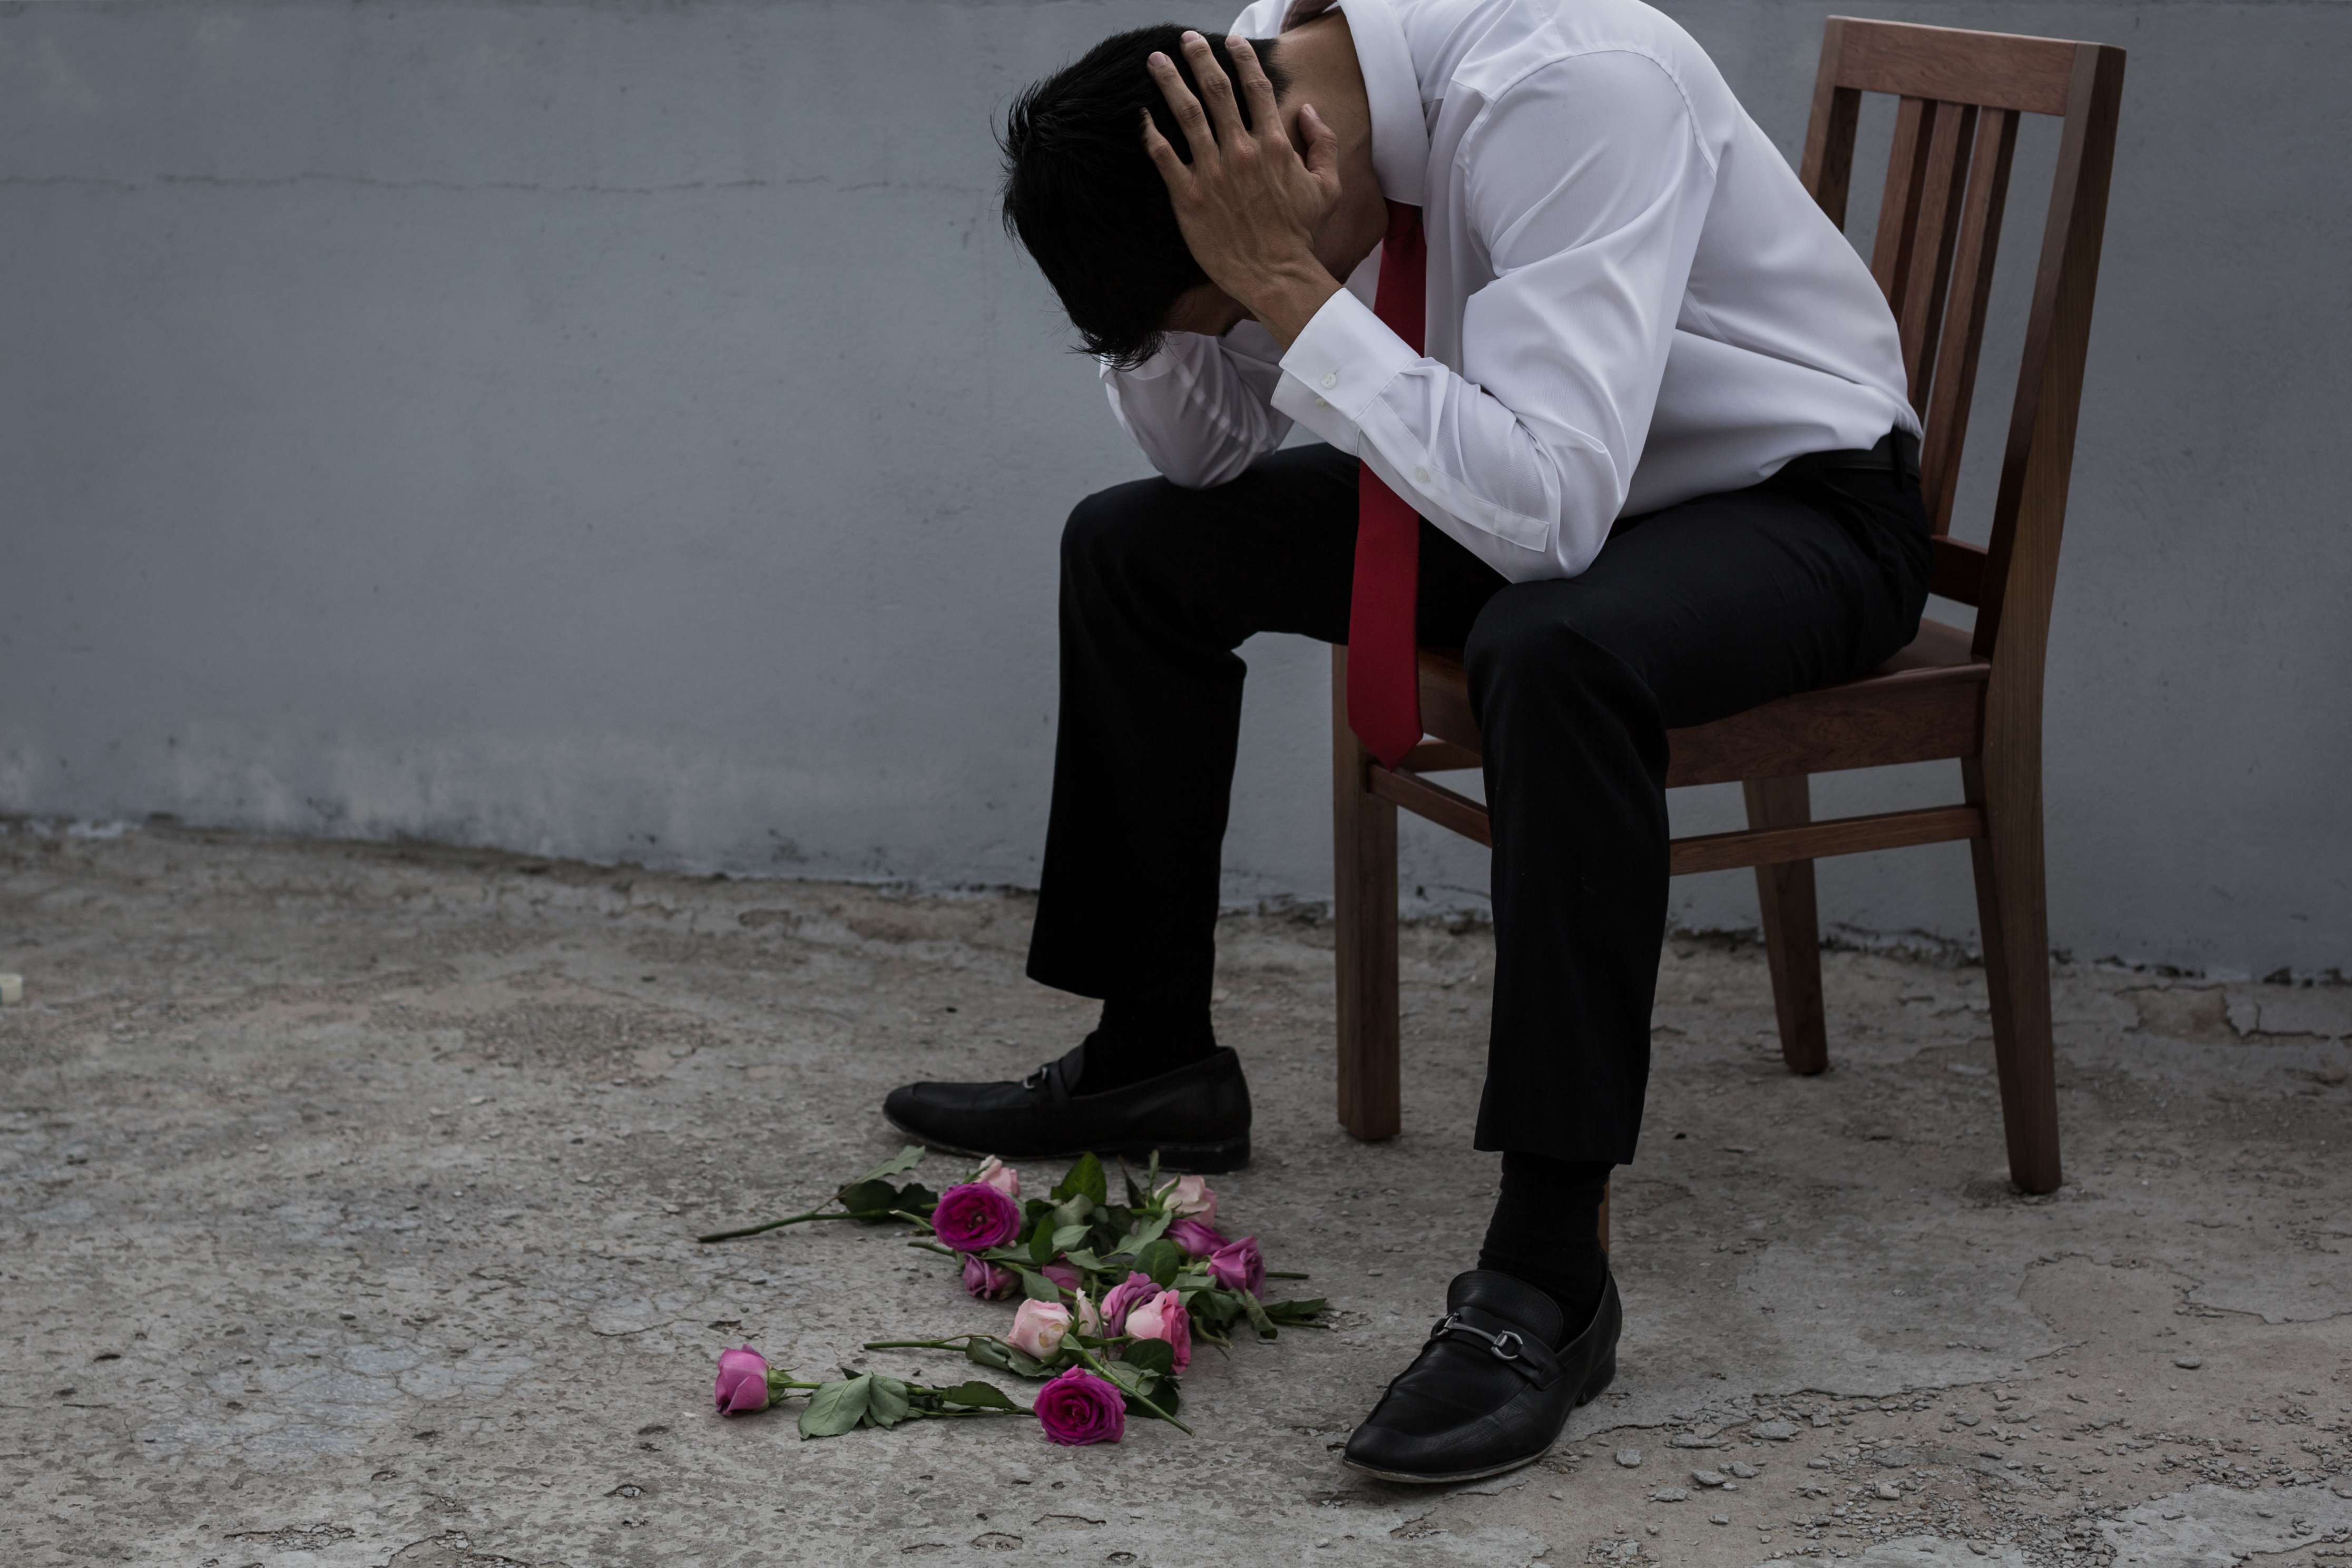 Ein traurig dreinblickender Mann mit auf dem Boden verstreuten Blumen | Quelle: Shutterstock